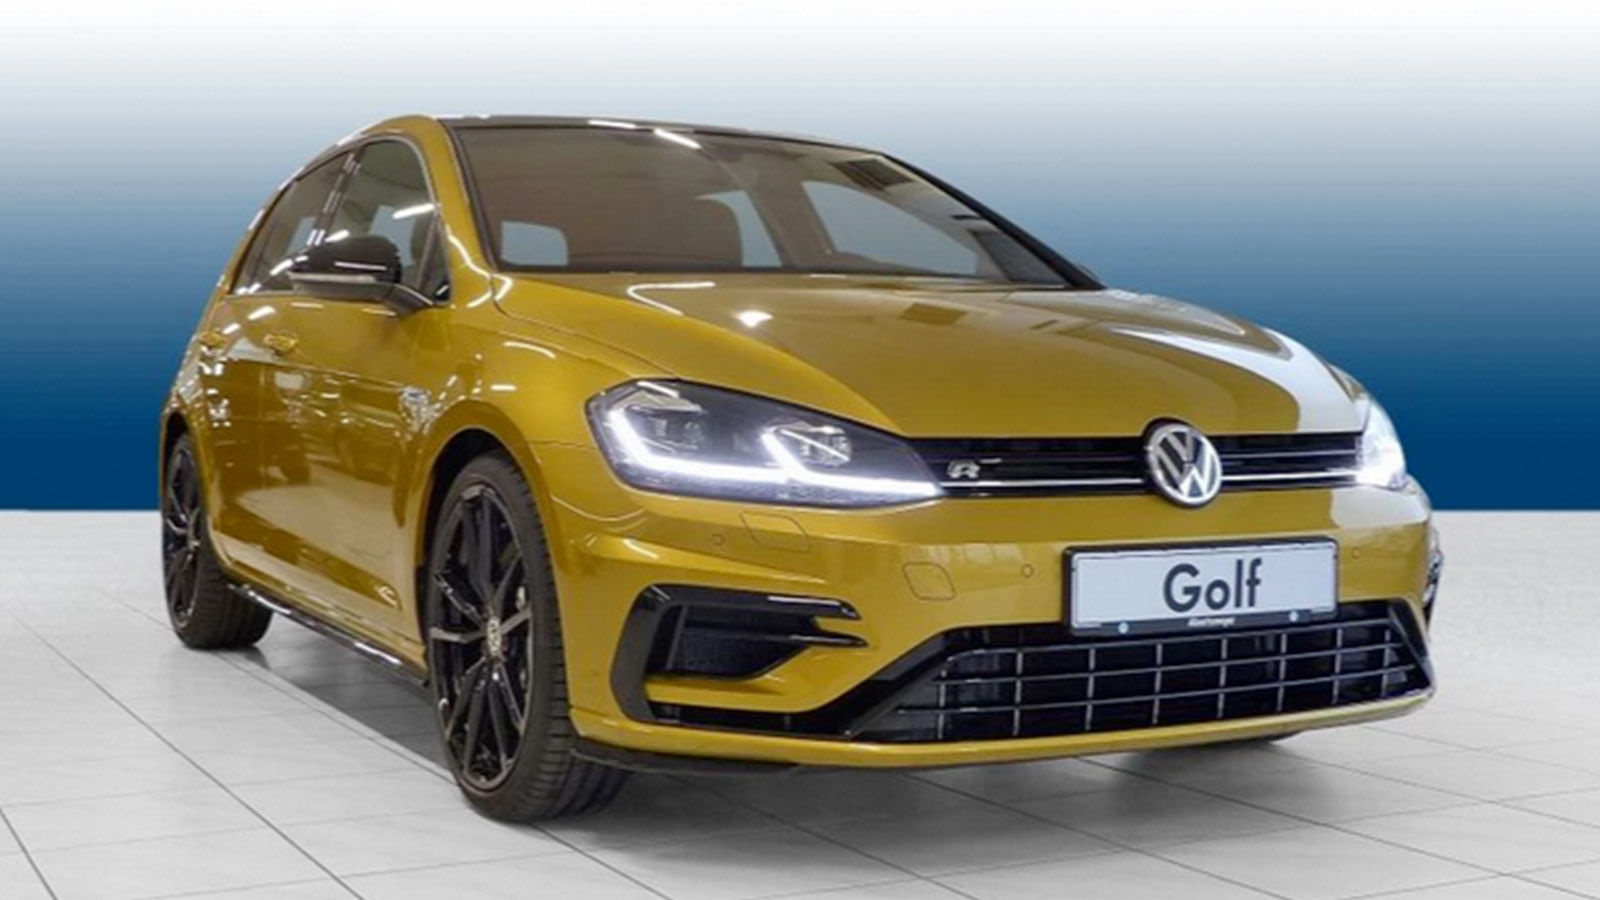 VW Golf 7 R (2018): gebraucht - Motor - Preis - Laufleistung - Infos